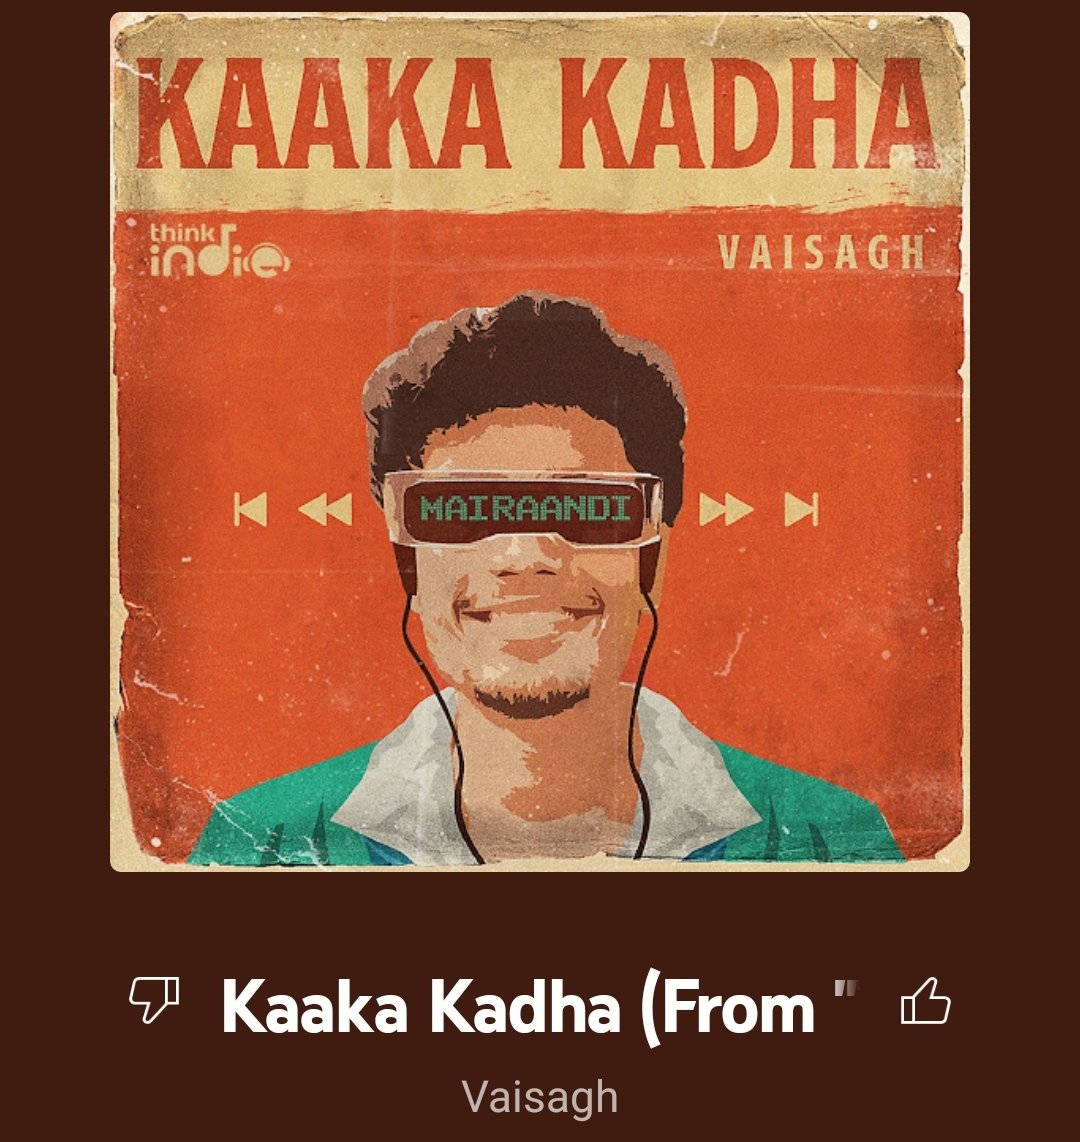 Vibing now.. #kaakakadha #vaisagh 
Any fans?